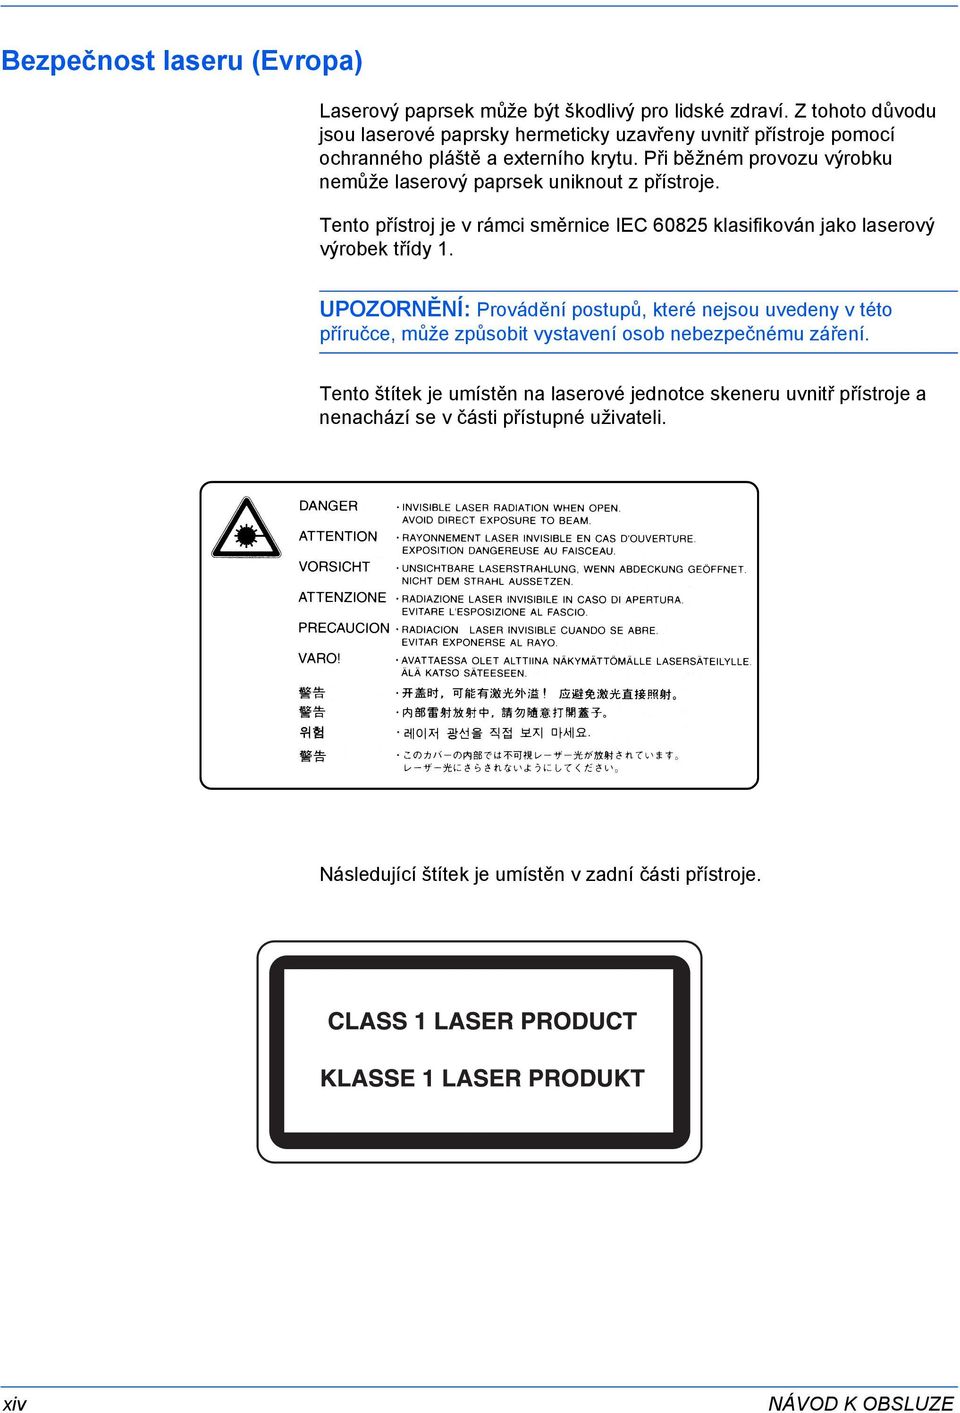 Při běžném provozu výrobku nemůže laserový paprsek uniknout z přístroje. Tento přístroj je v rámci směrnice IEC 685 klasifikován jako laserový výrobek třídy.